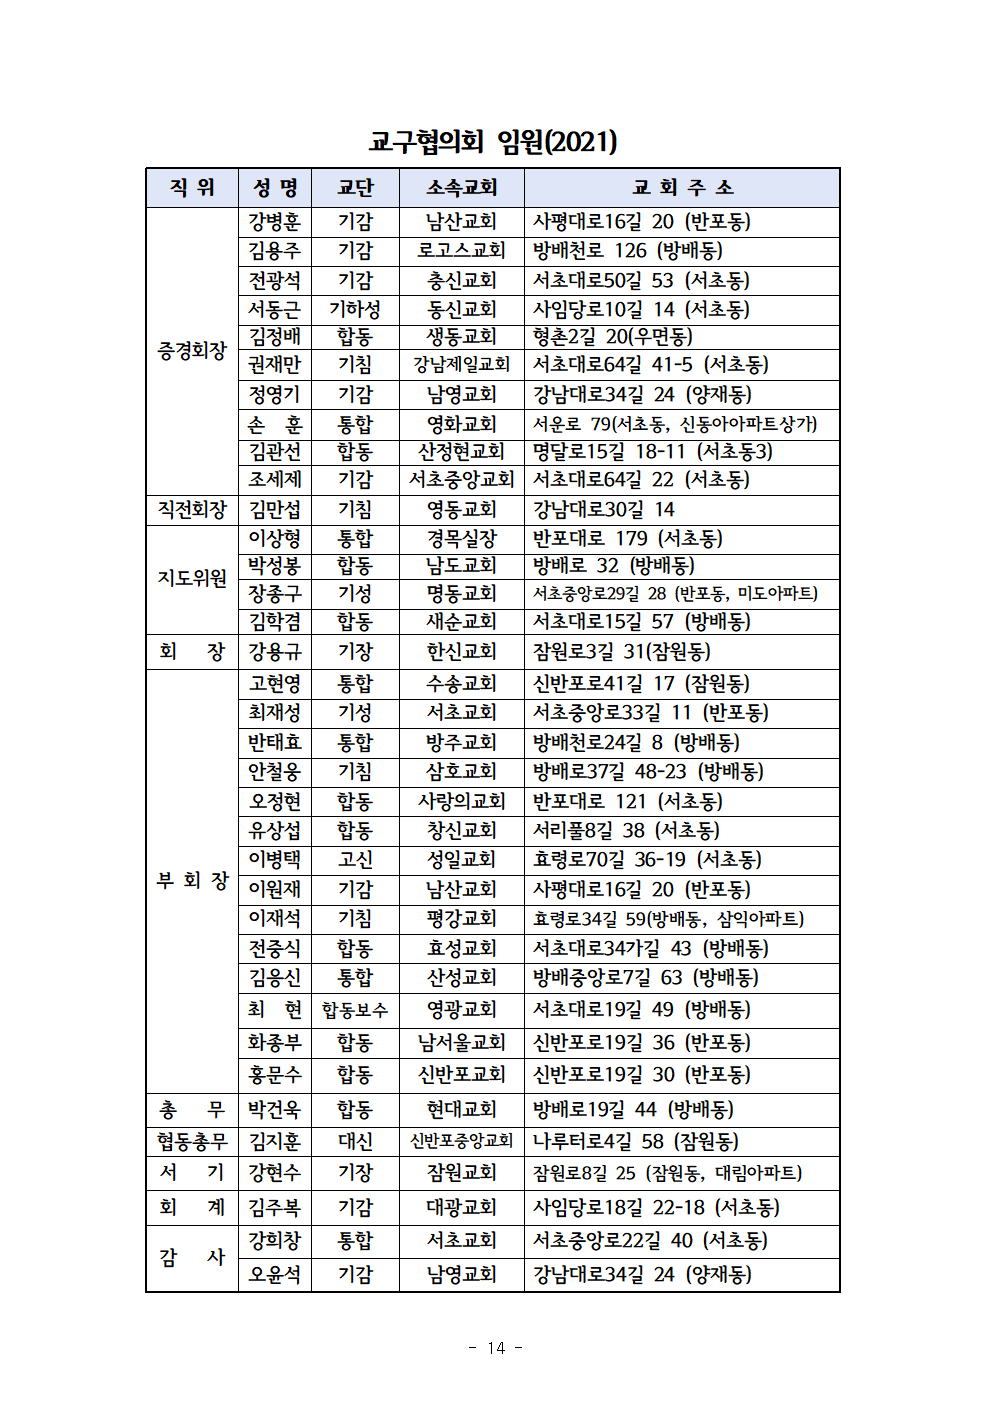 2021회기 서초교구협의회 정기총회자료(12.17)_홈피용015.png